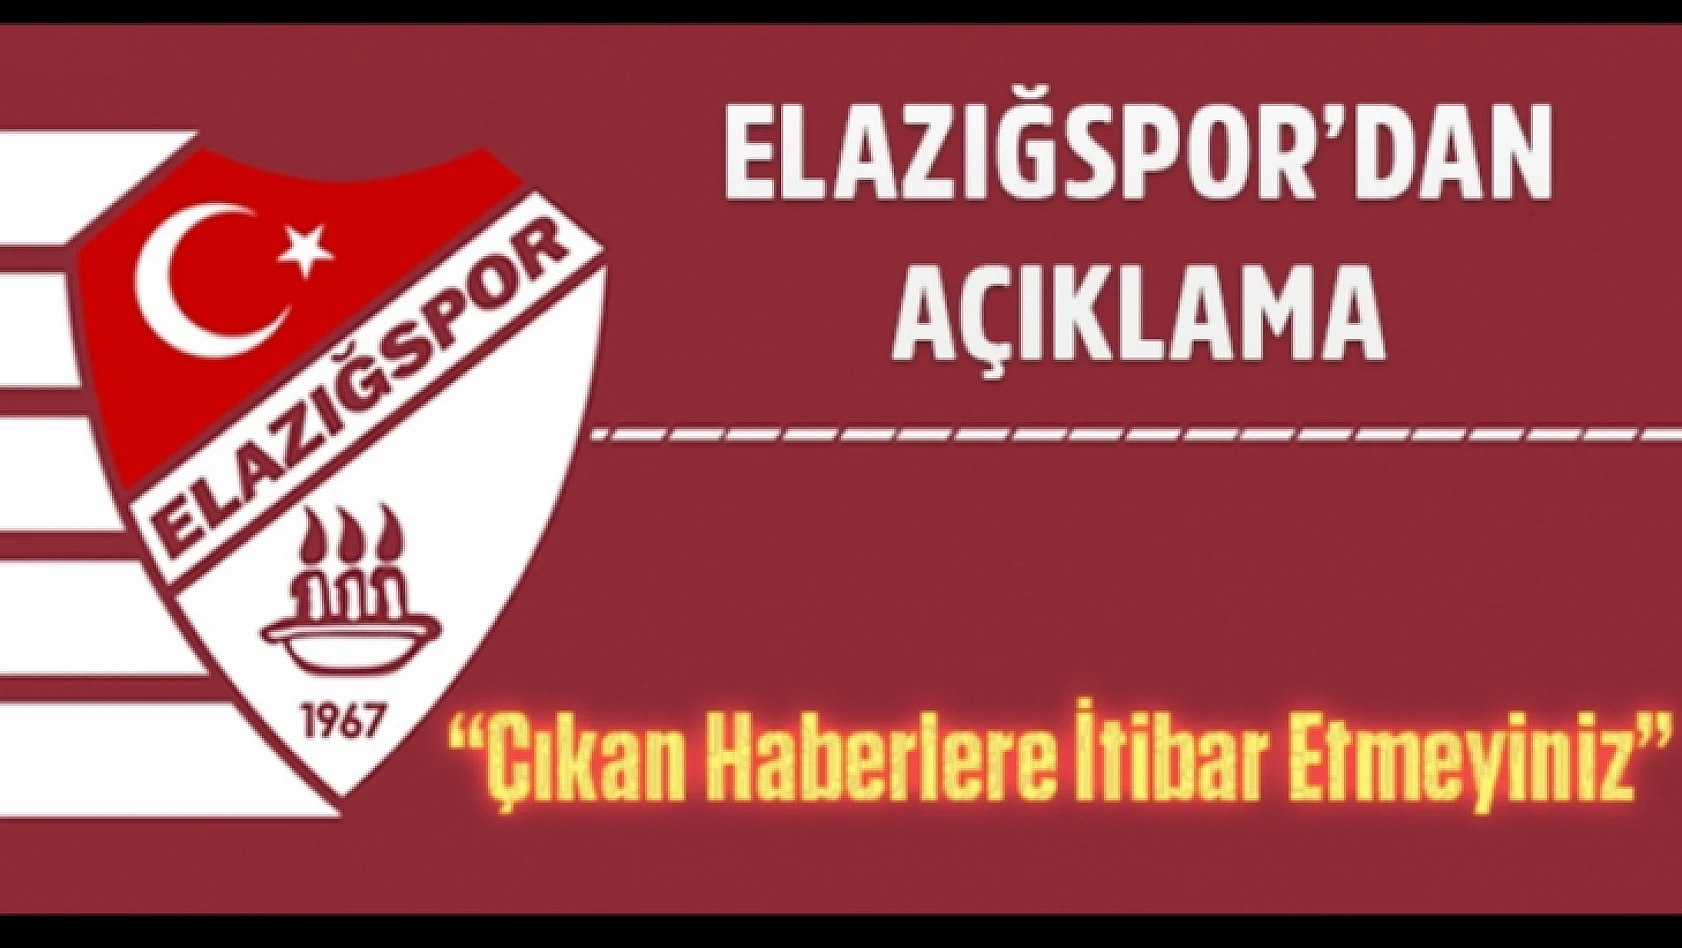 Elazığspor'dan Kamuoyuna Açıklama!